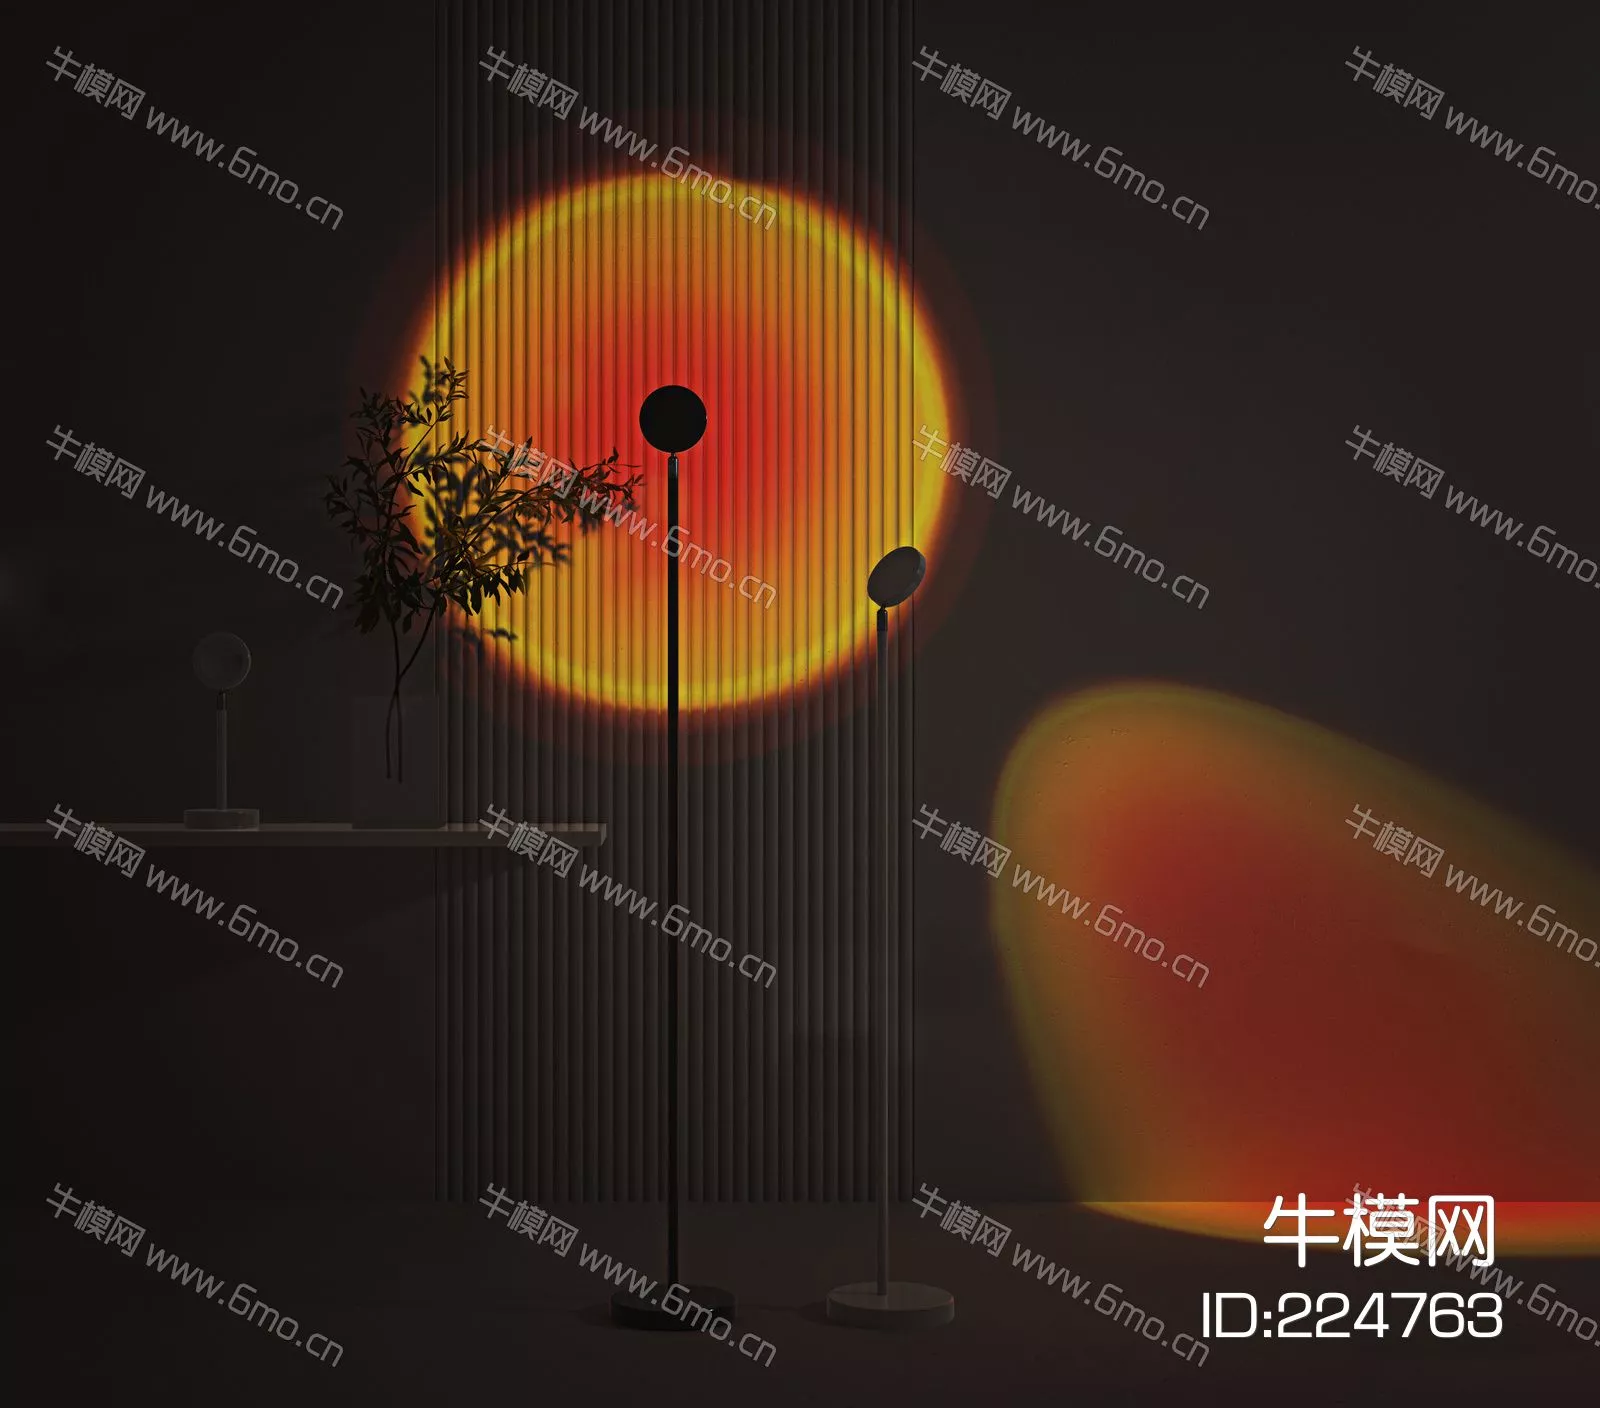 MODERN FLOOR LAMP - SKETCHUP 3D MODEL - ENSCAPE - 224763